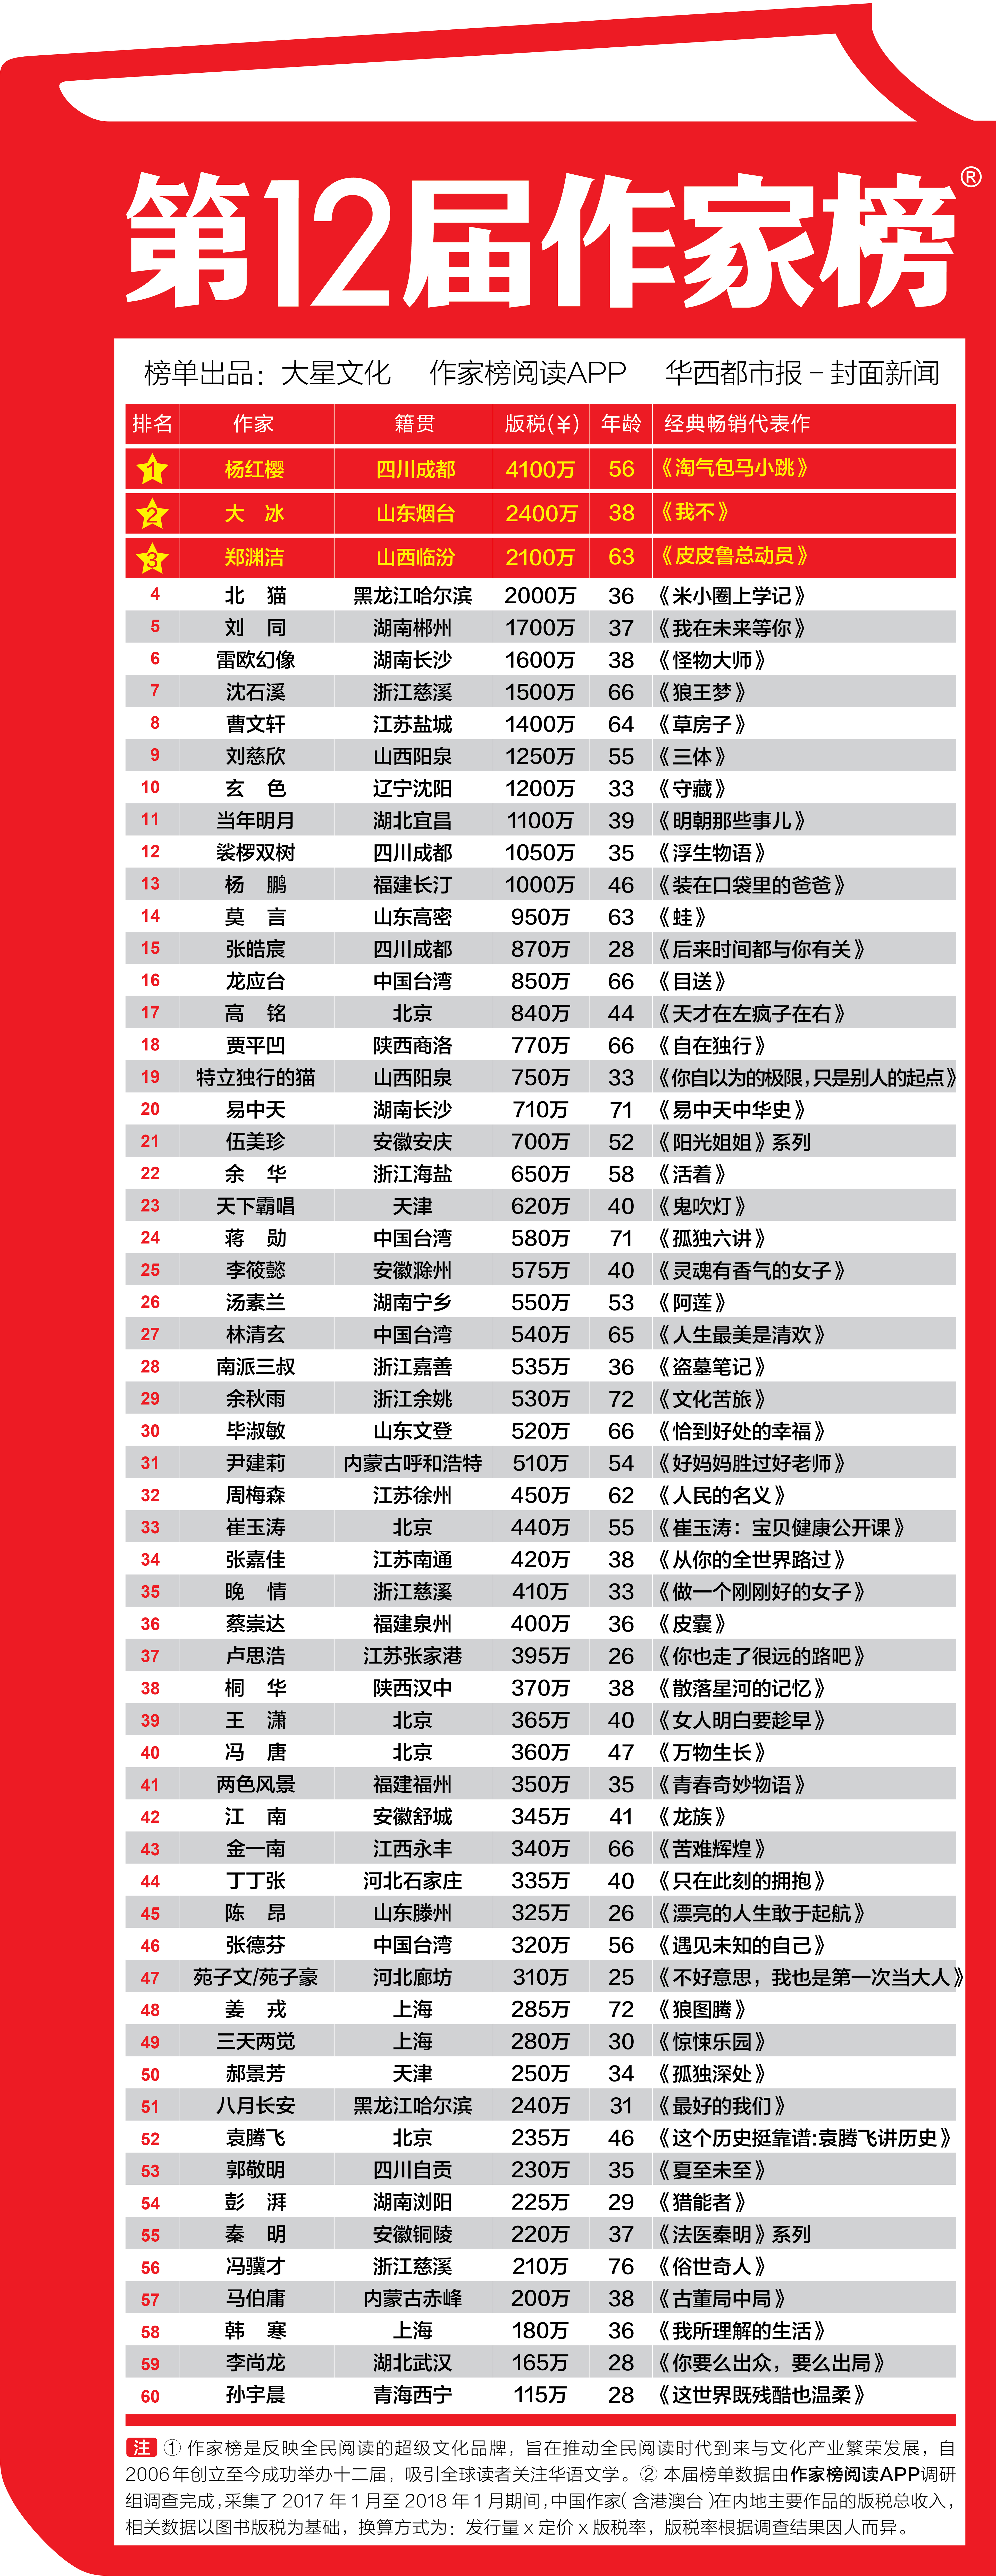 作家榜主榜发布 时隔8年杨红樱以4100万重回榜首